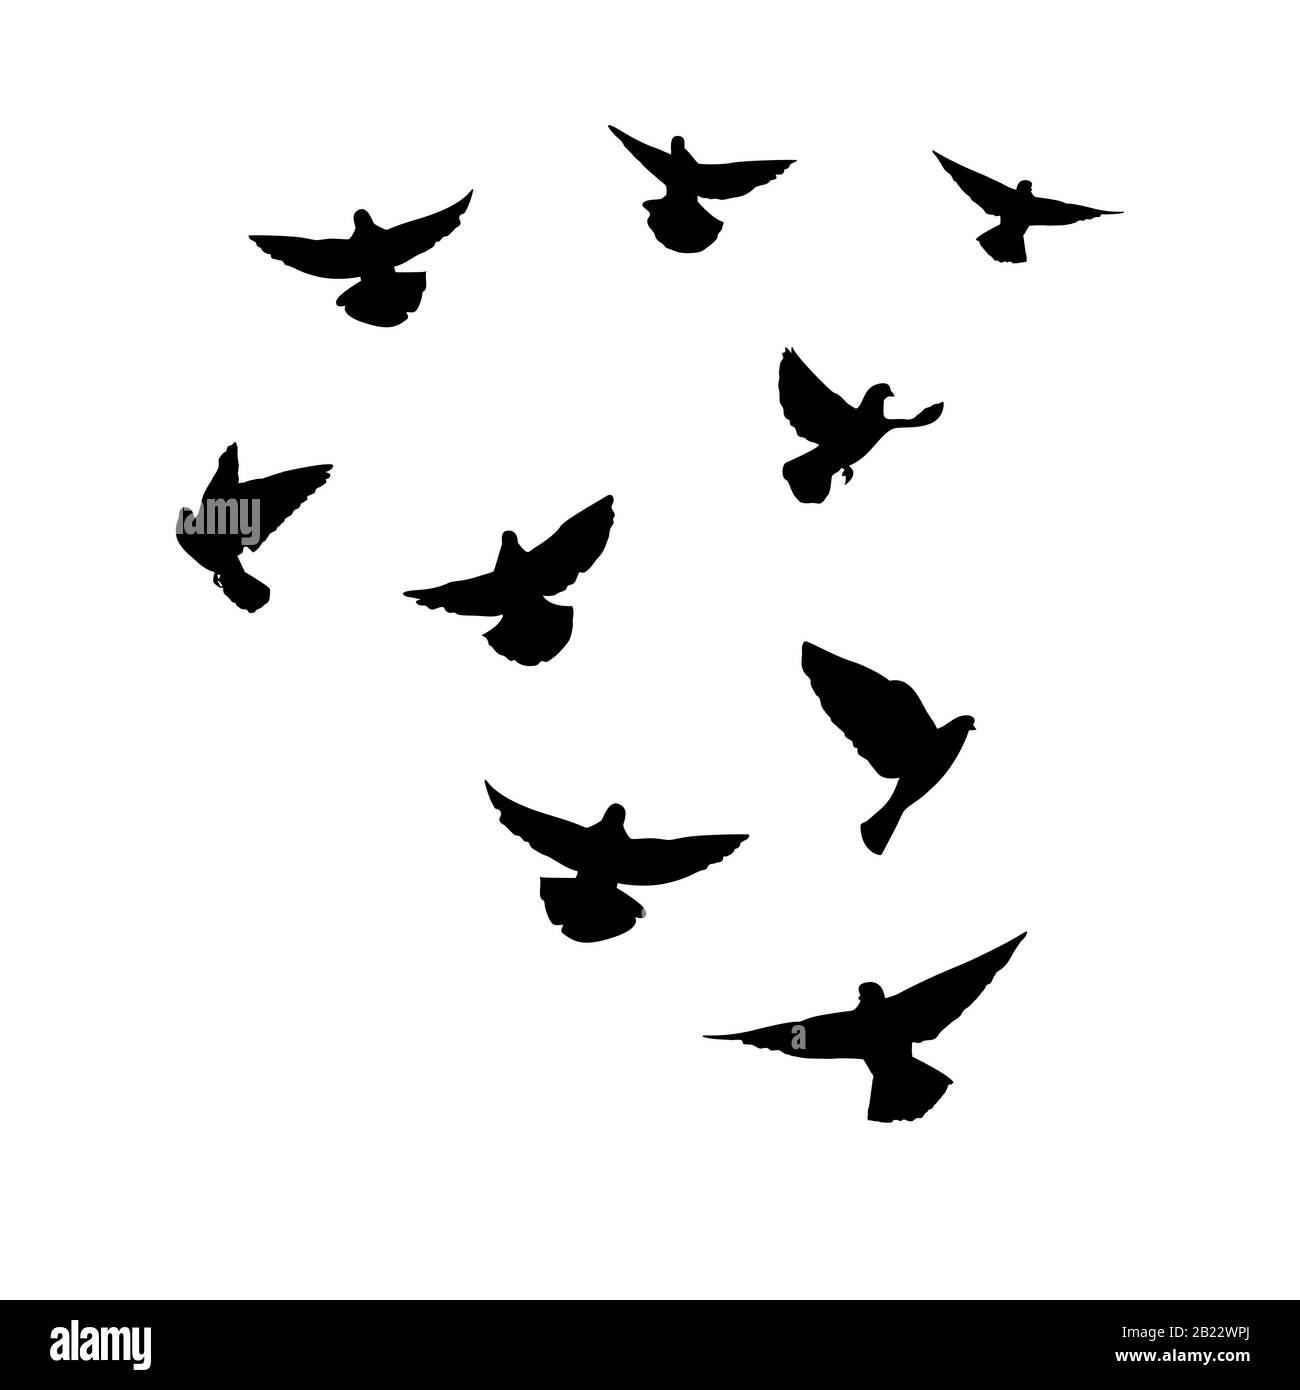 Les colombes volent. Silhouette de pigeons qui volent sur un fond blanc. Illustration vectorielle Illustration de Vecteur